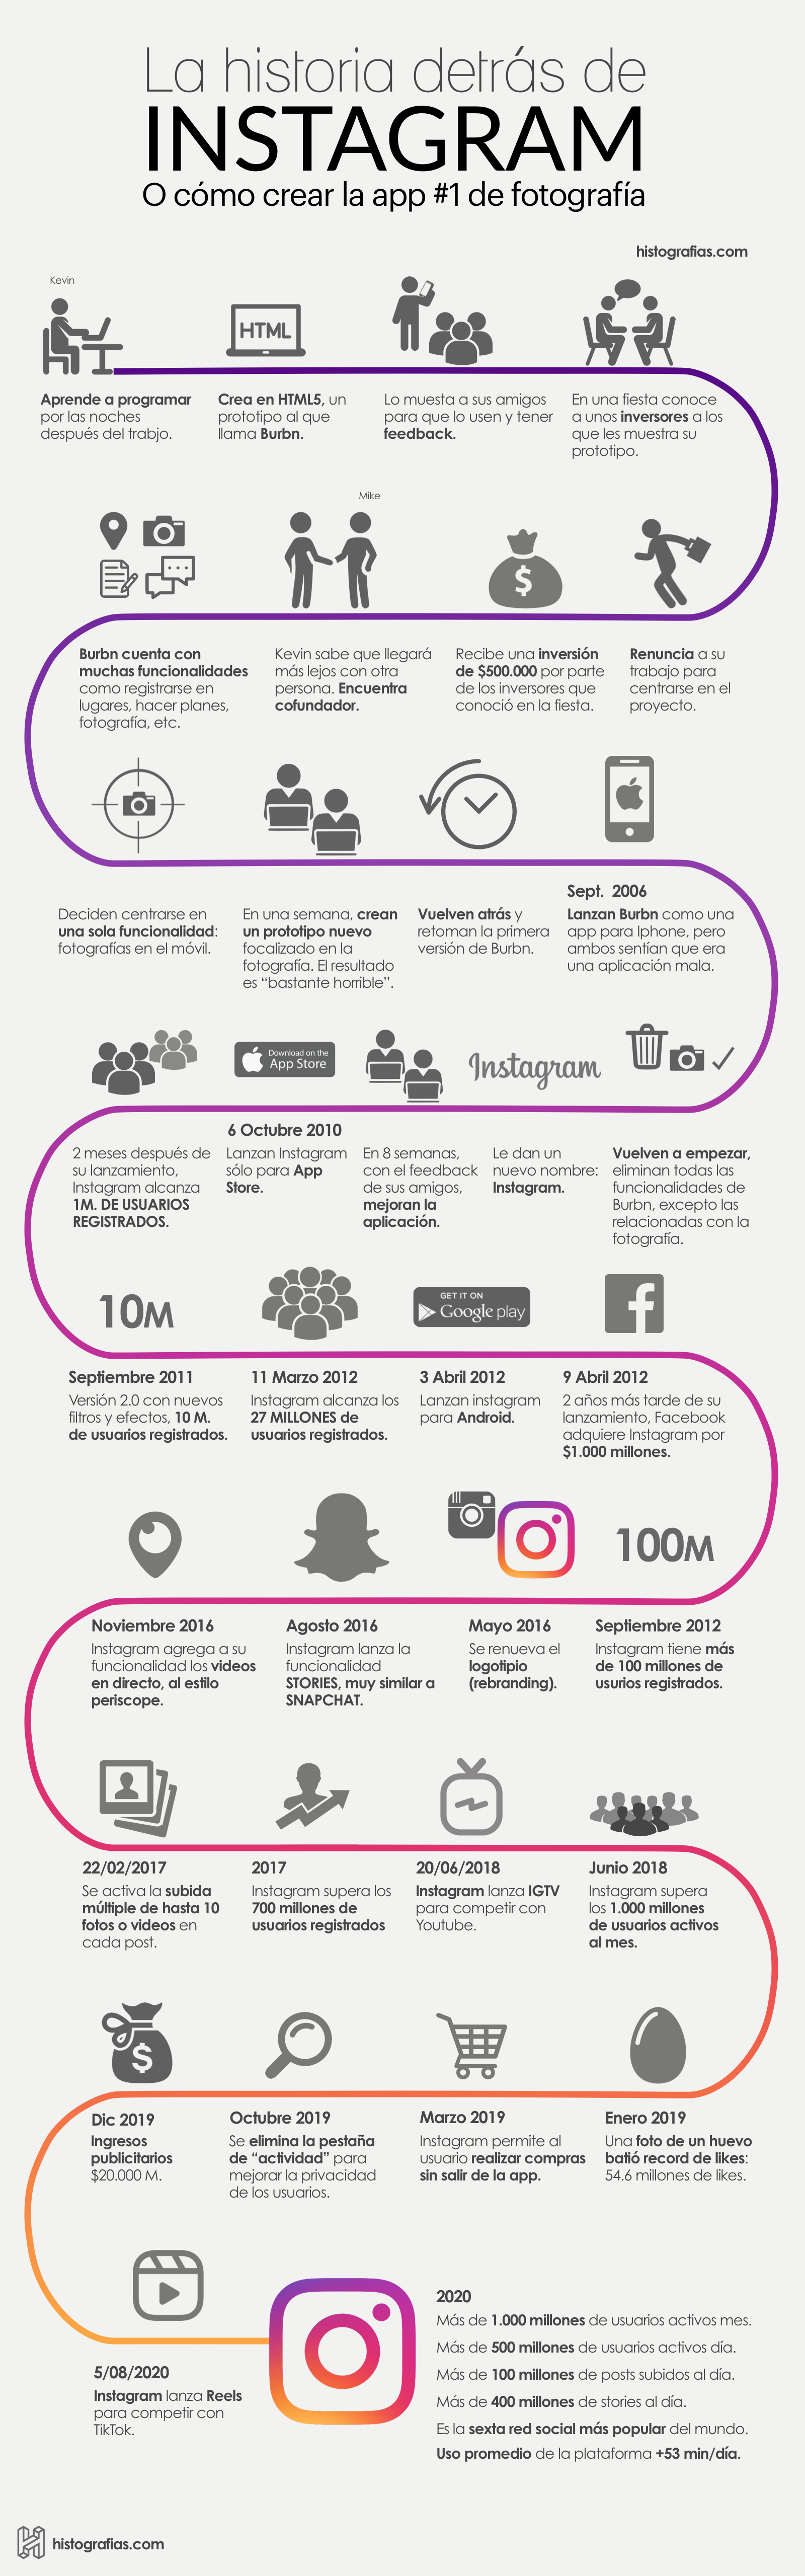 Infografía que cuenta la historia de Kevin Systrom y Mike Krieger fundadores de Instagram. Desde su nacimiento hasta el año 2020, año en el que supera los 1.000 millones de usuarios activos al mes.